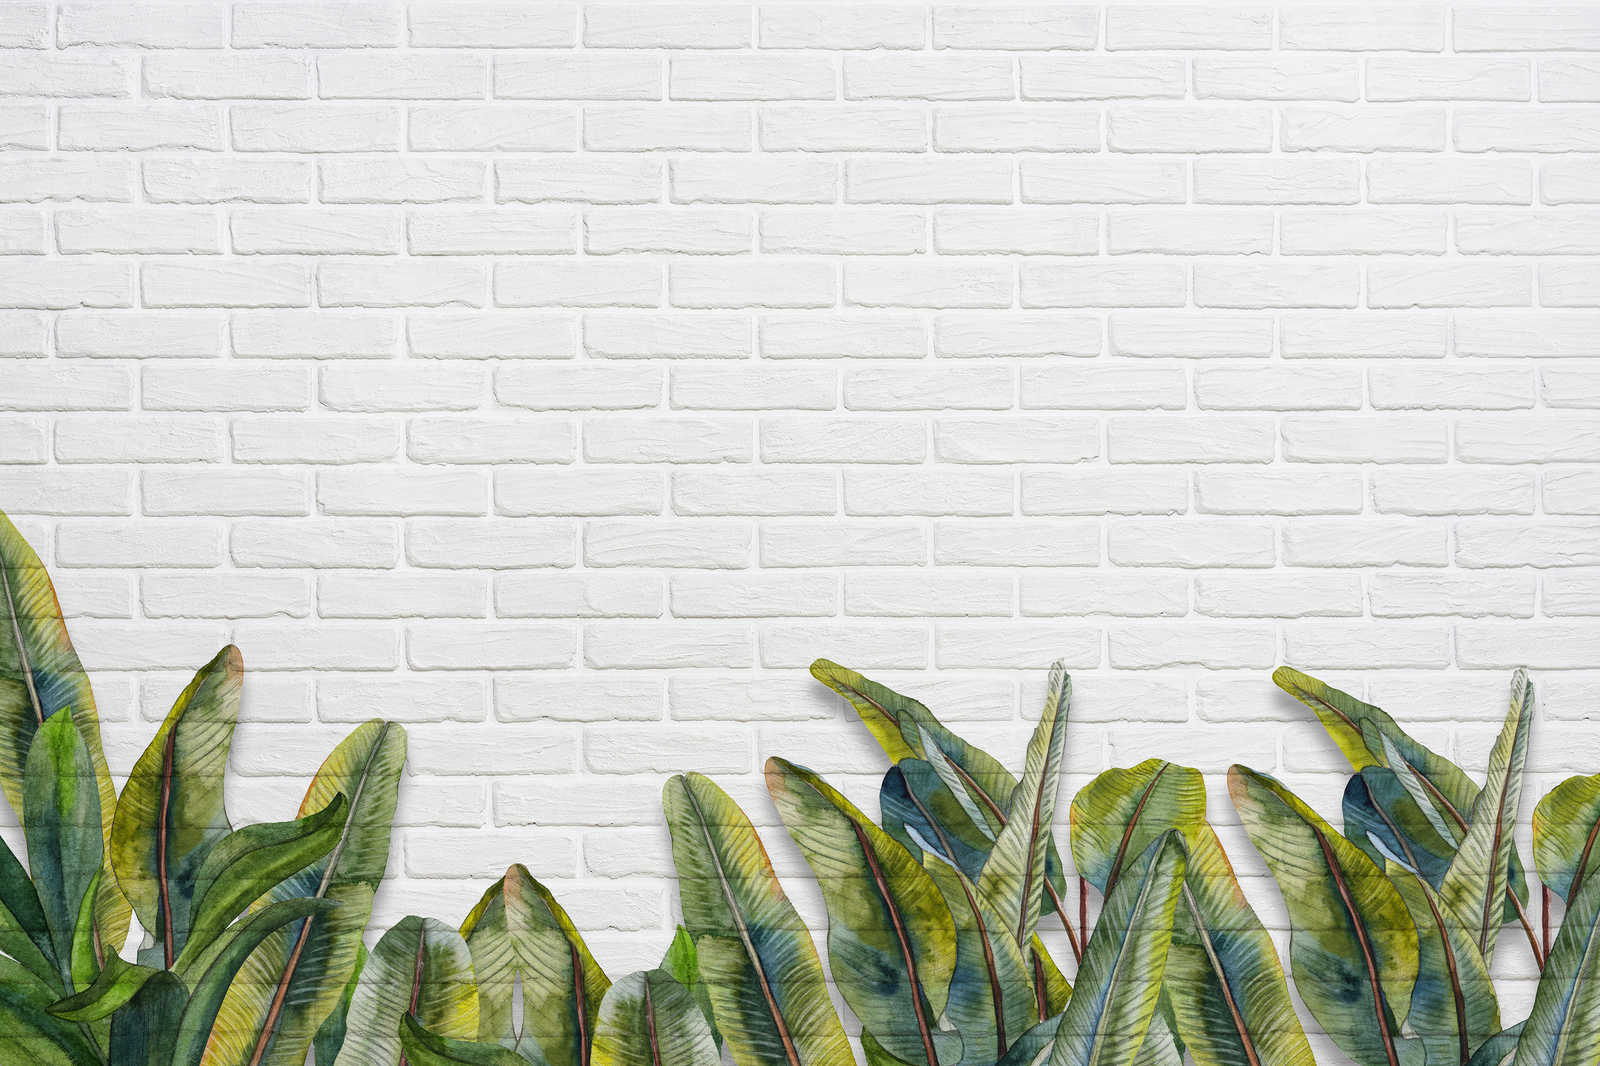             Leinwandbild mit Blättern vor weißer Backsteinmauer – 0,90 m x 0,60 m
        